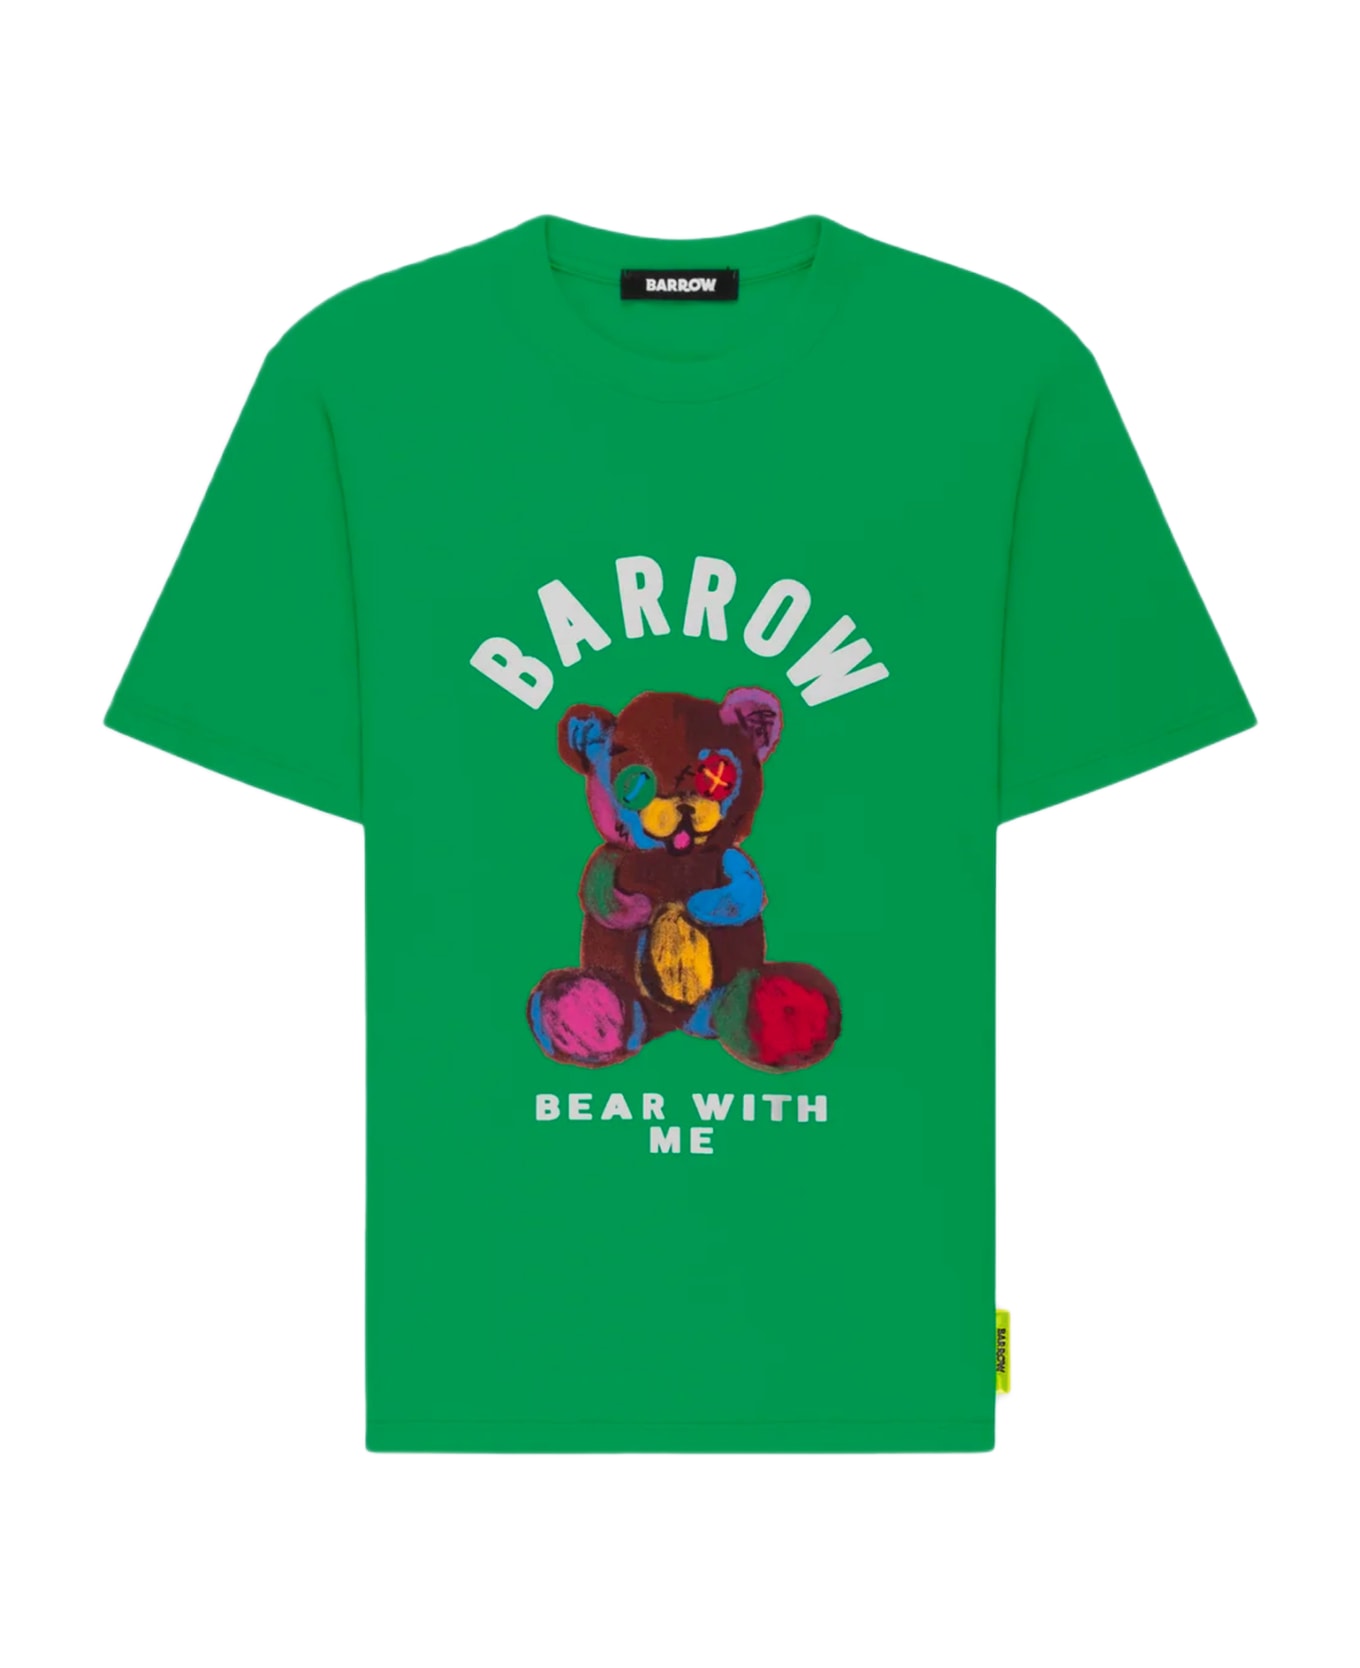 Barrow Jersey T-shirt Unisex Emerald Green Cotton T-shirt With Teddy Bear Front Print Barrow